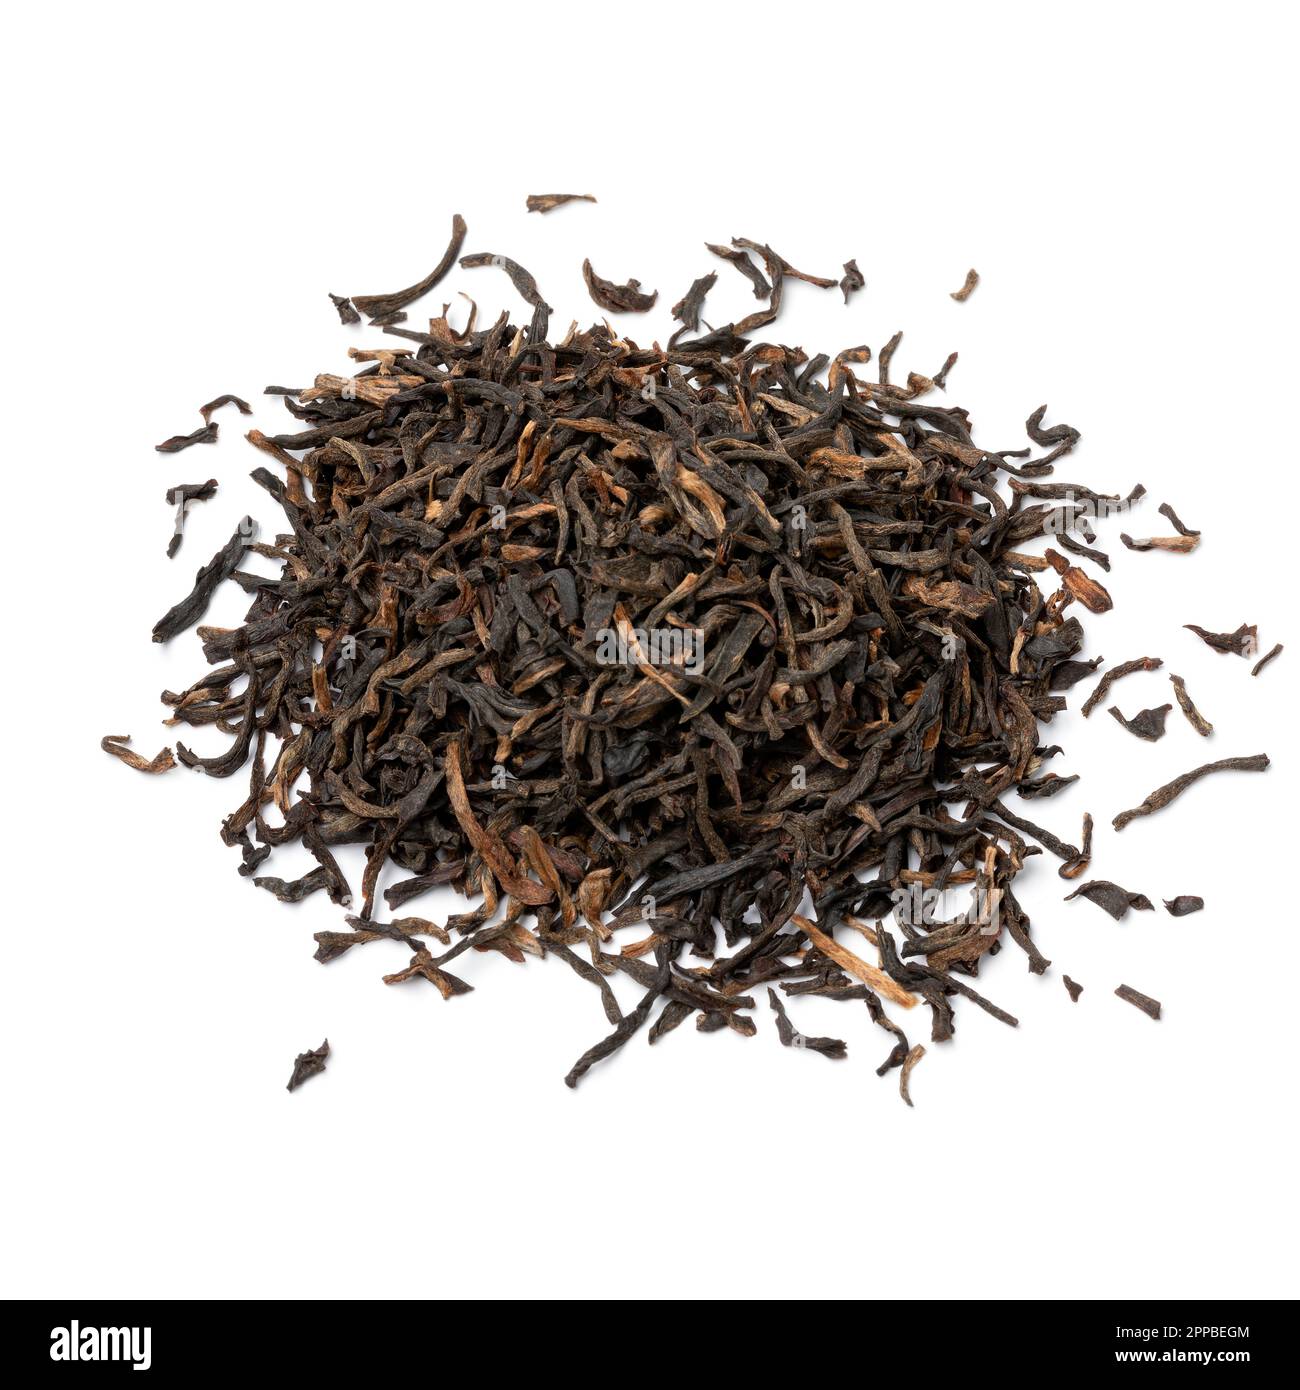 Cumulo di Assam indiano nero Harmutty foglie di tè secco primo piano isolato su sfondo bianco Foto Stock